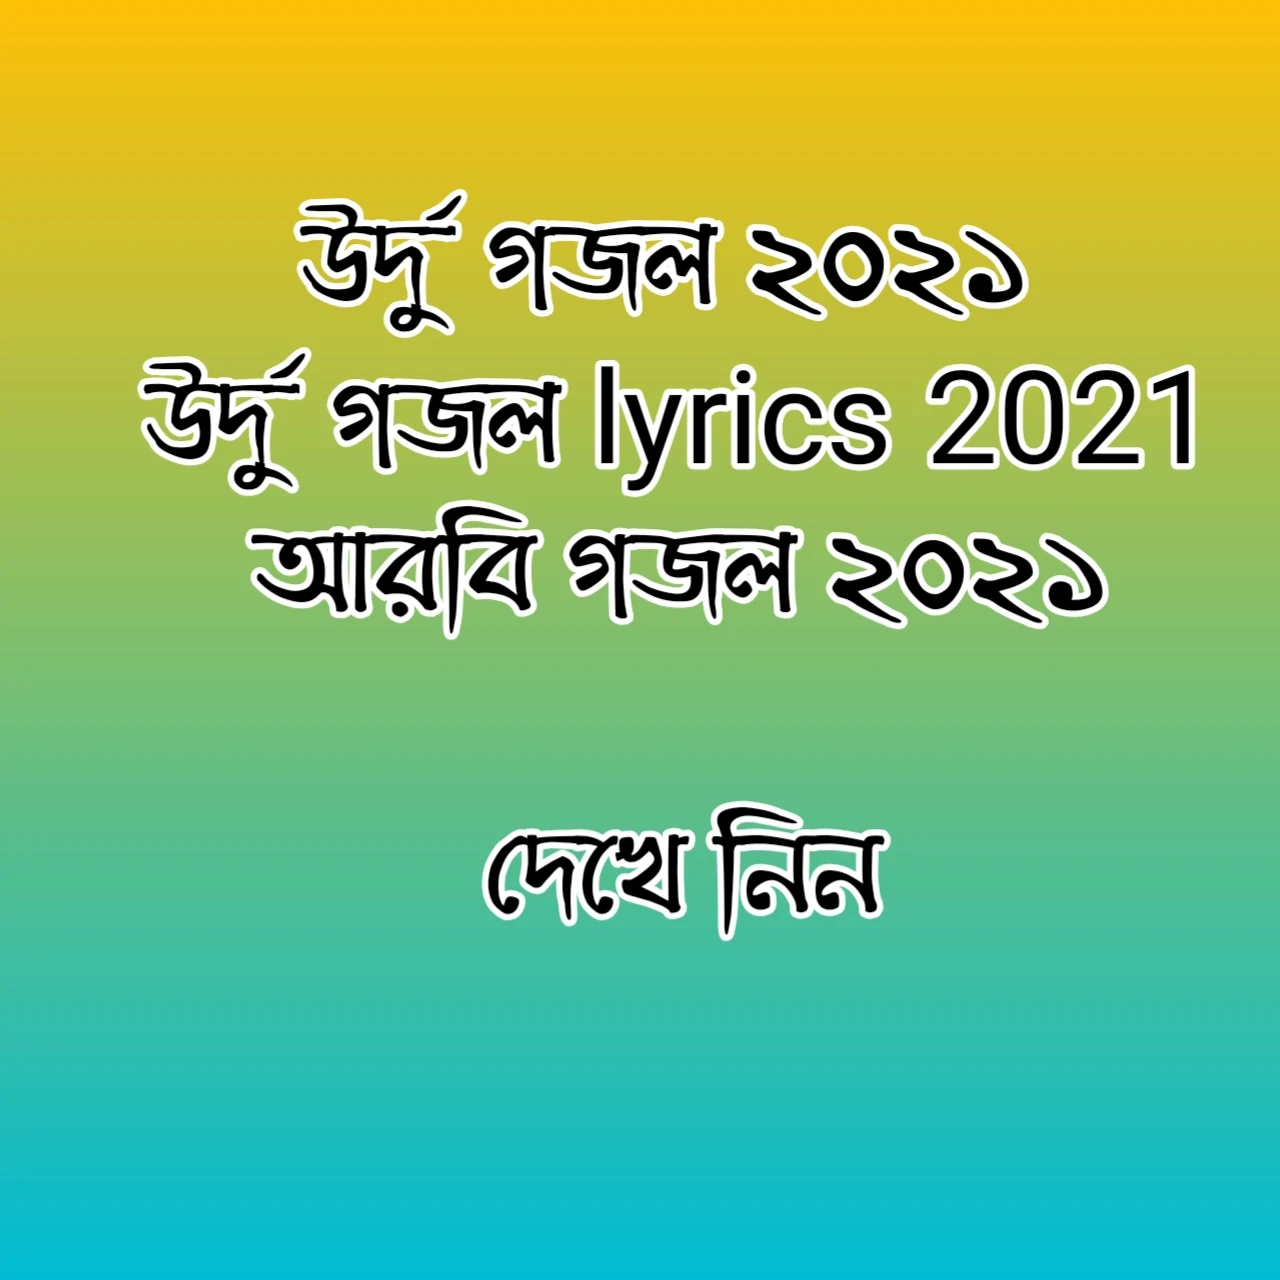 উর্দু গজল ২০২১ | উর্দু গজল lyrics 2021 | আরবি গজল ২০২১